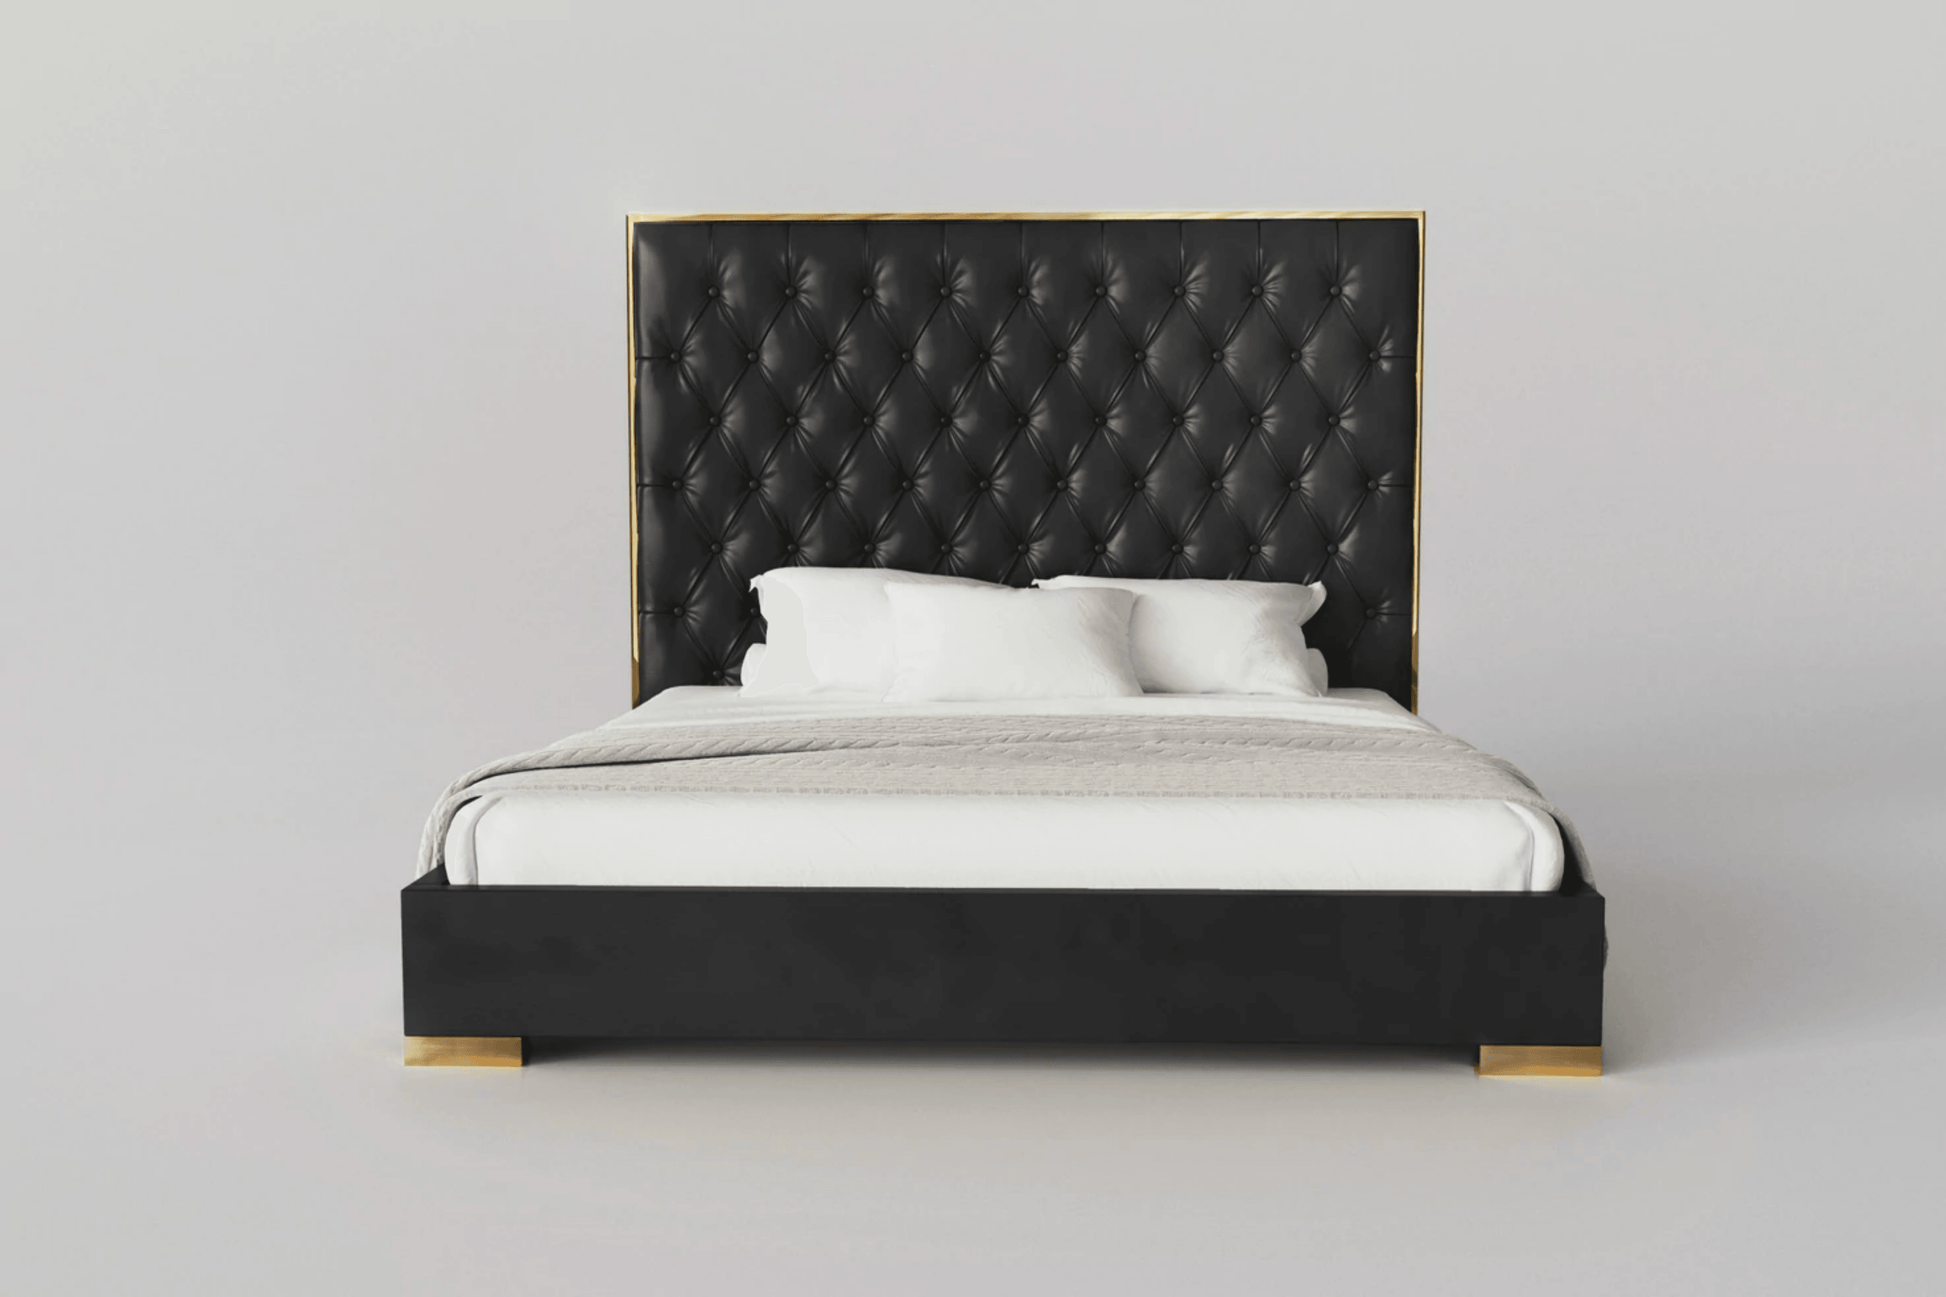 Verona Bedroom Bed - Venini Furniture 